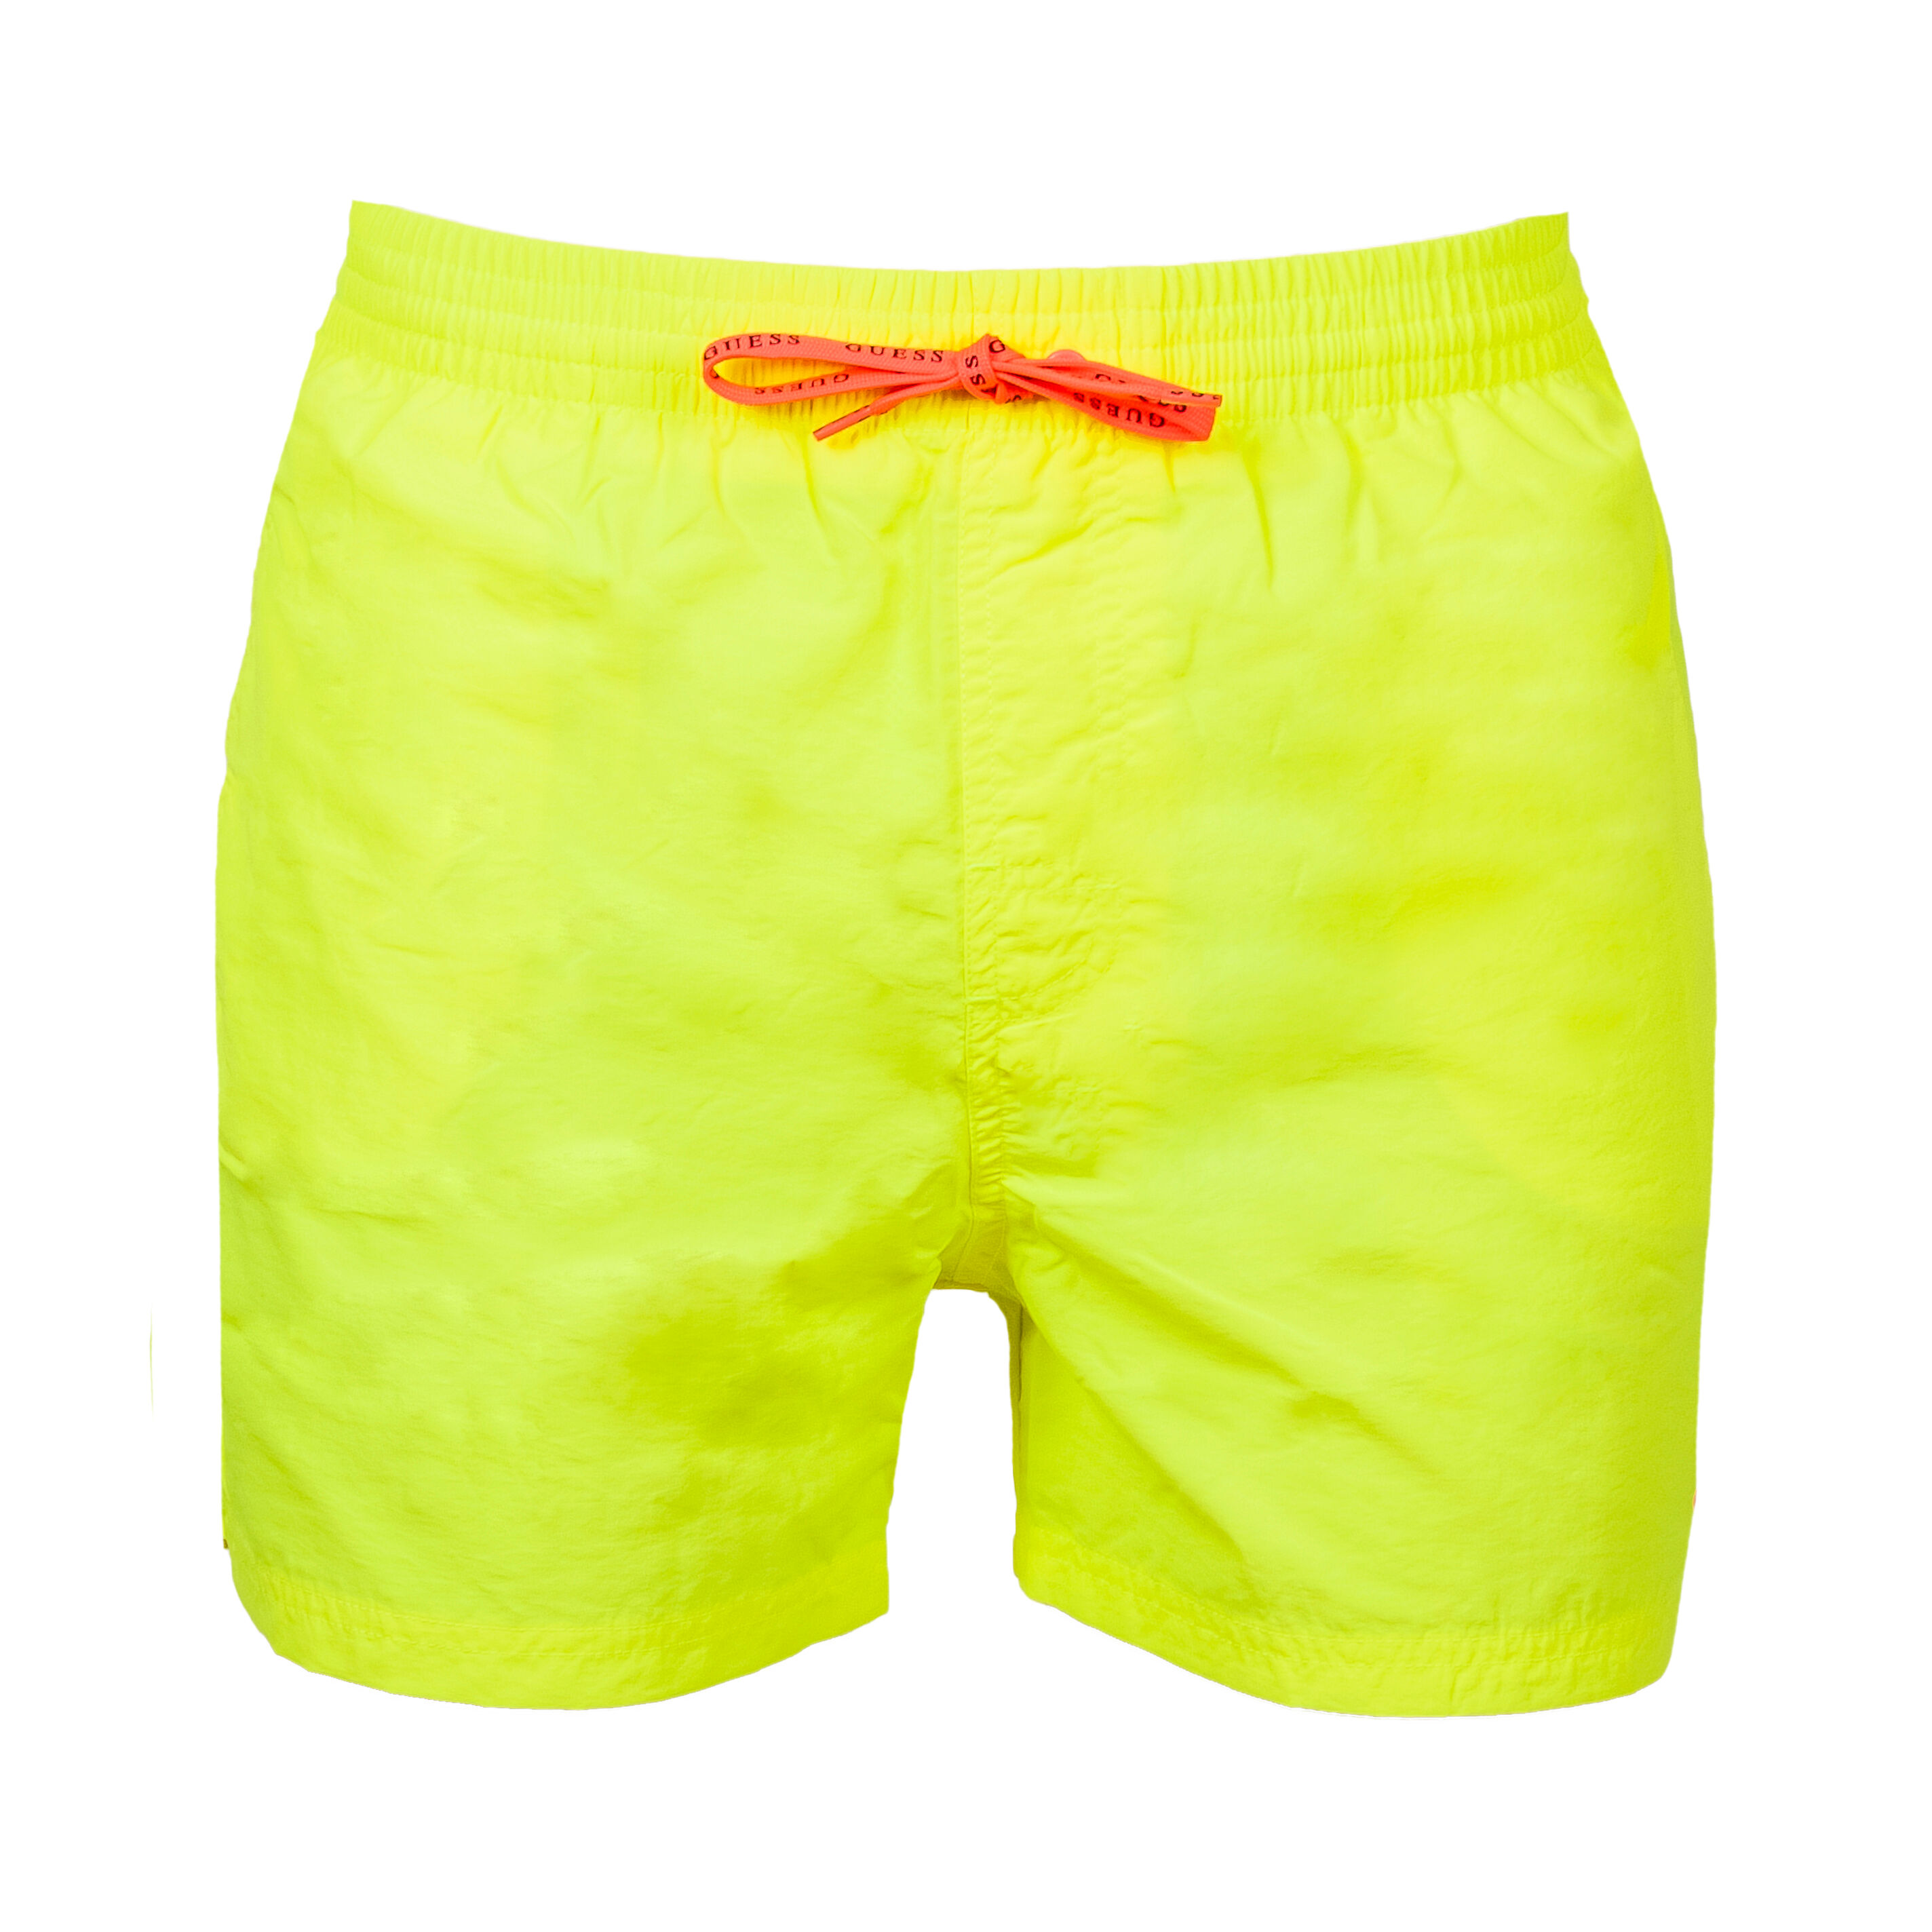 Guess Underwear Short de bain Guess Woven jaune fluo à logo rose - JAUNE FLUO - XXL